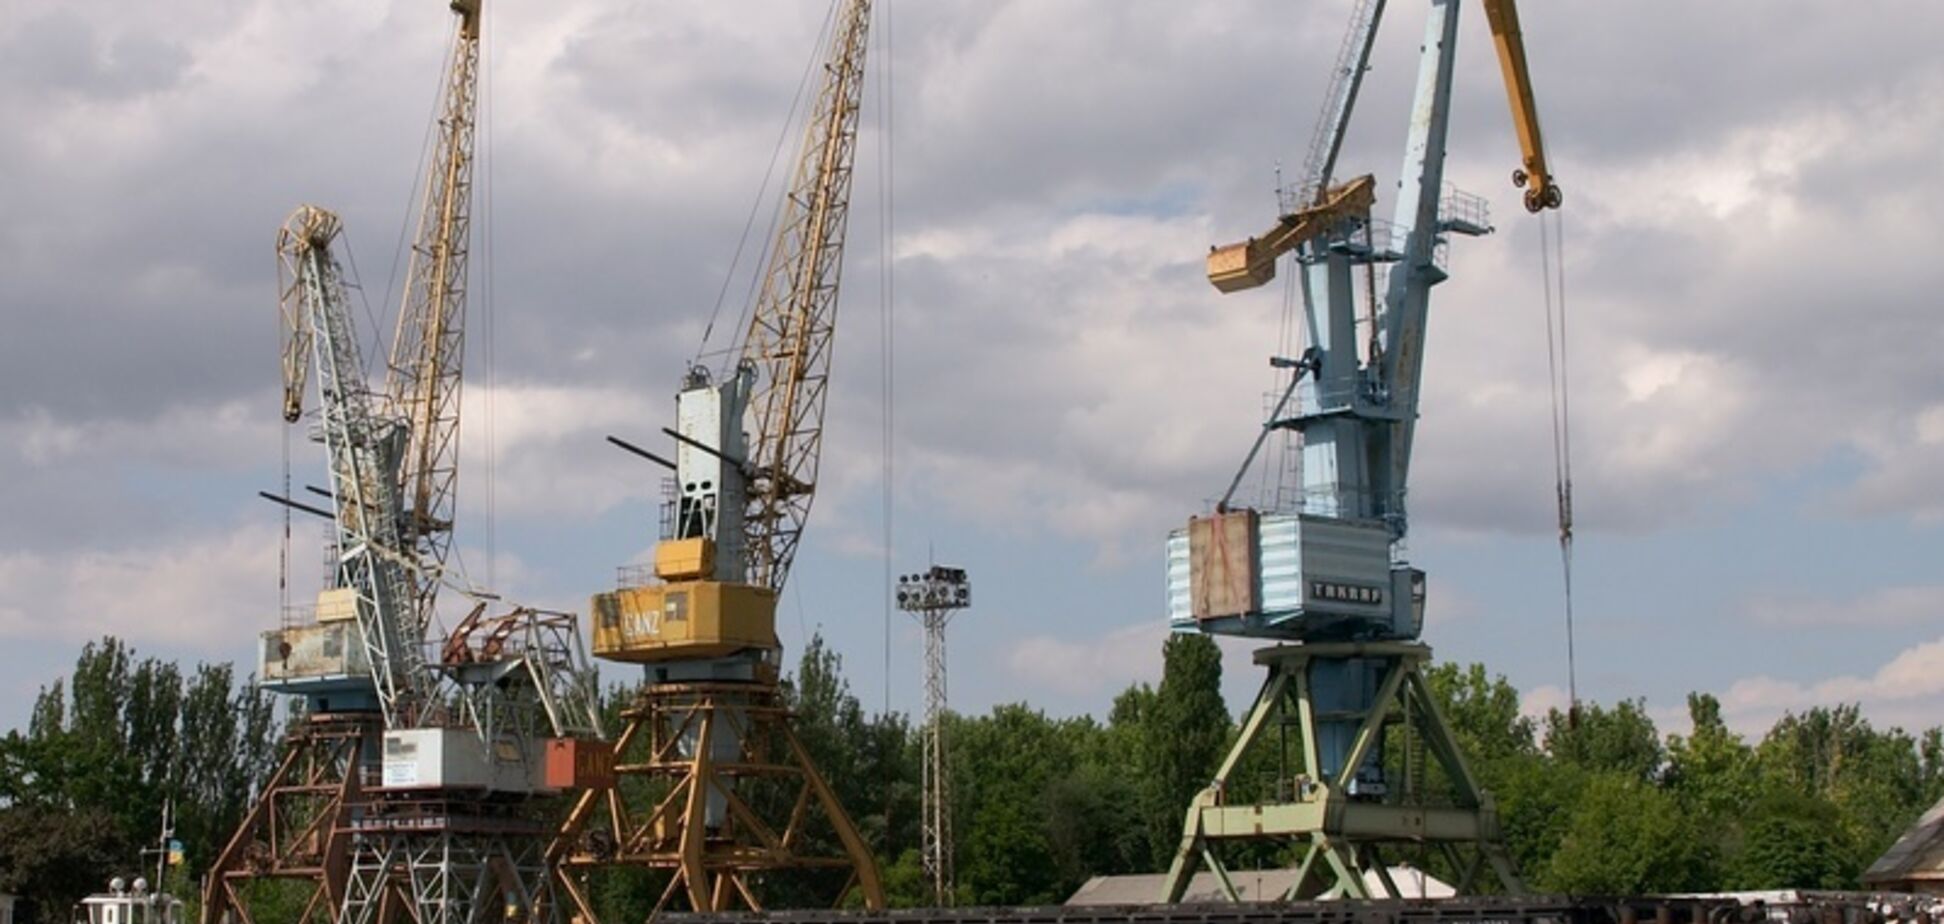 Усть-Дунайський порт вдалося продати в 3 рази дорожче стартової ціни за рахунок серйозної конкуренції з боку Кропачова та Мазепи